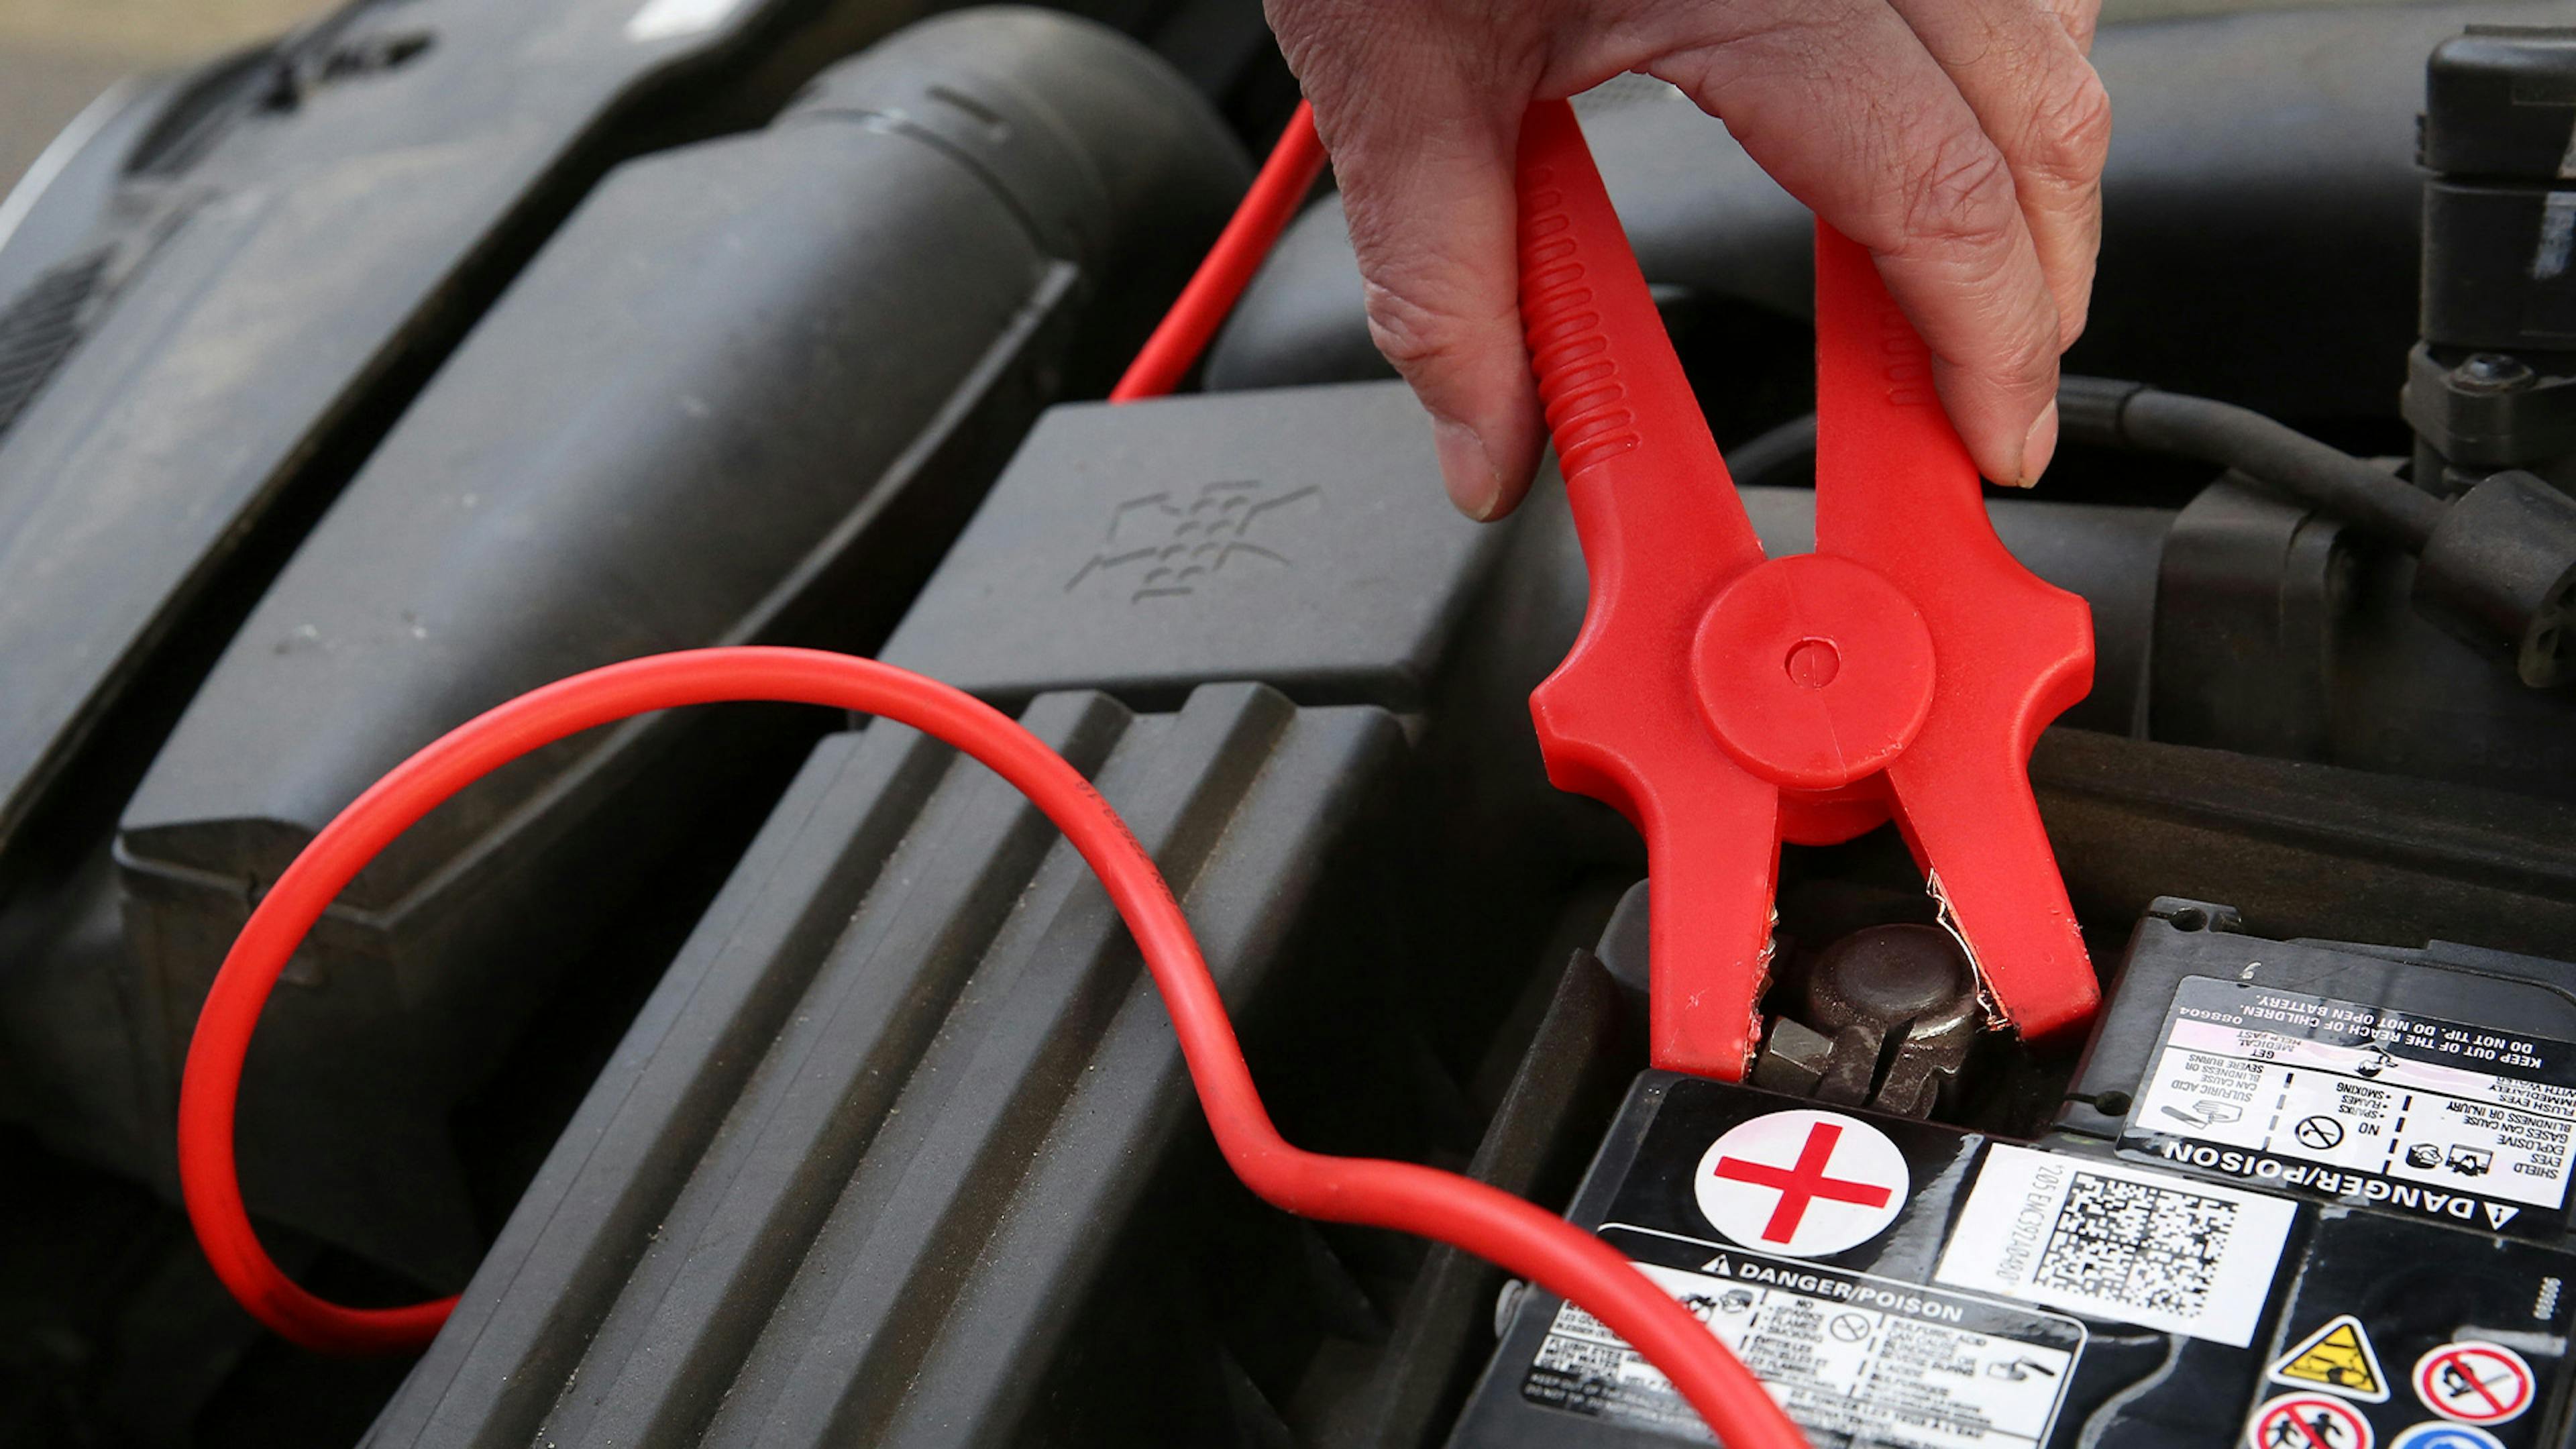 Eine Person befestigt die rote Klemme eines Starterkabels am Pluspol einer Autobatterie, um Starthilfe zu geben.